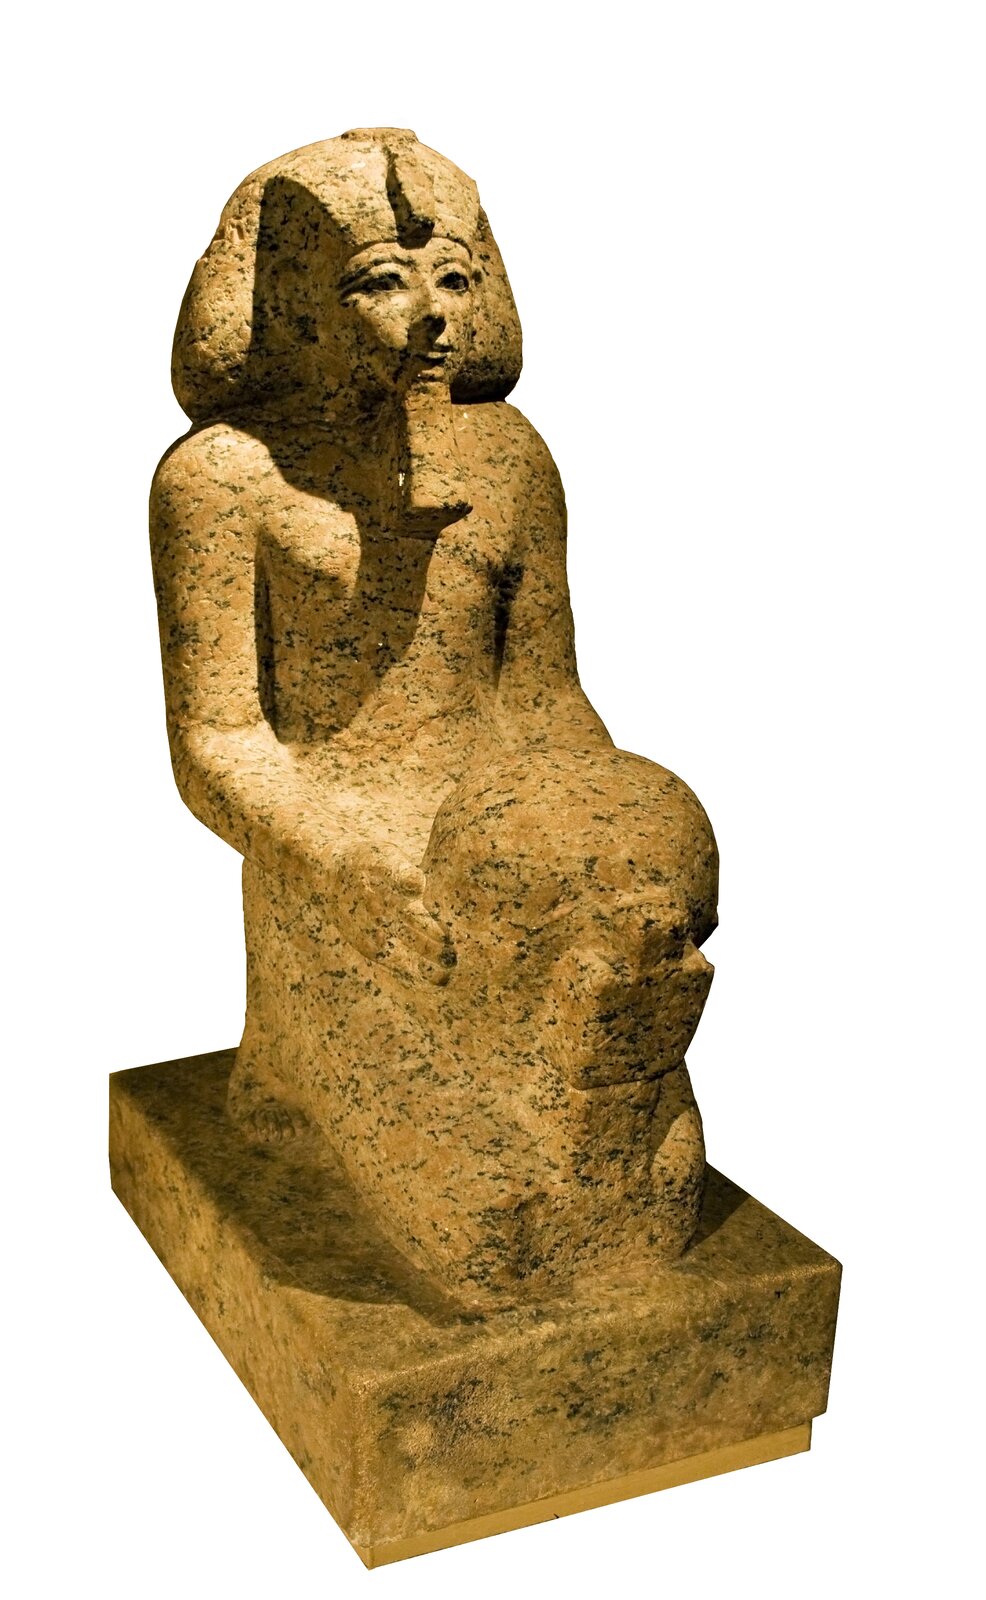 Posąg Hatszepsut, przechowywany obecnie w Nowym Muzeum w Berlinie Posąg Hatszepsut, przechowywany obecnie w Nowym Muzeum w Berlinie Źródło: domena publiczna.